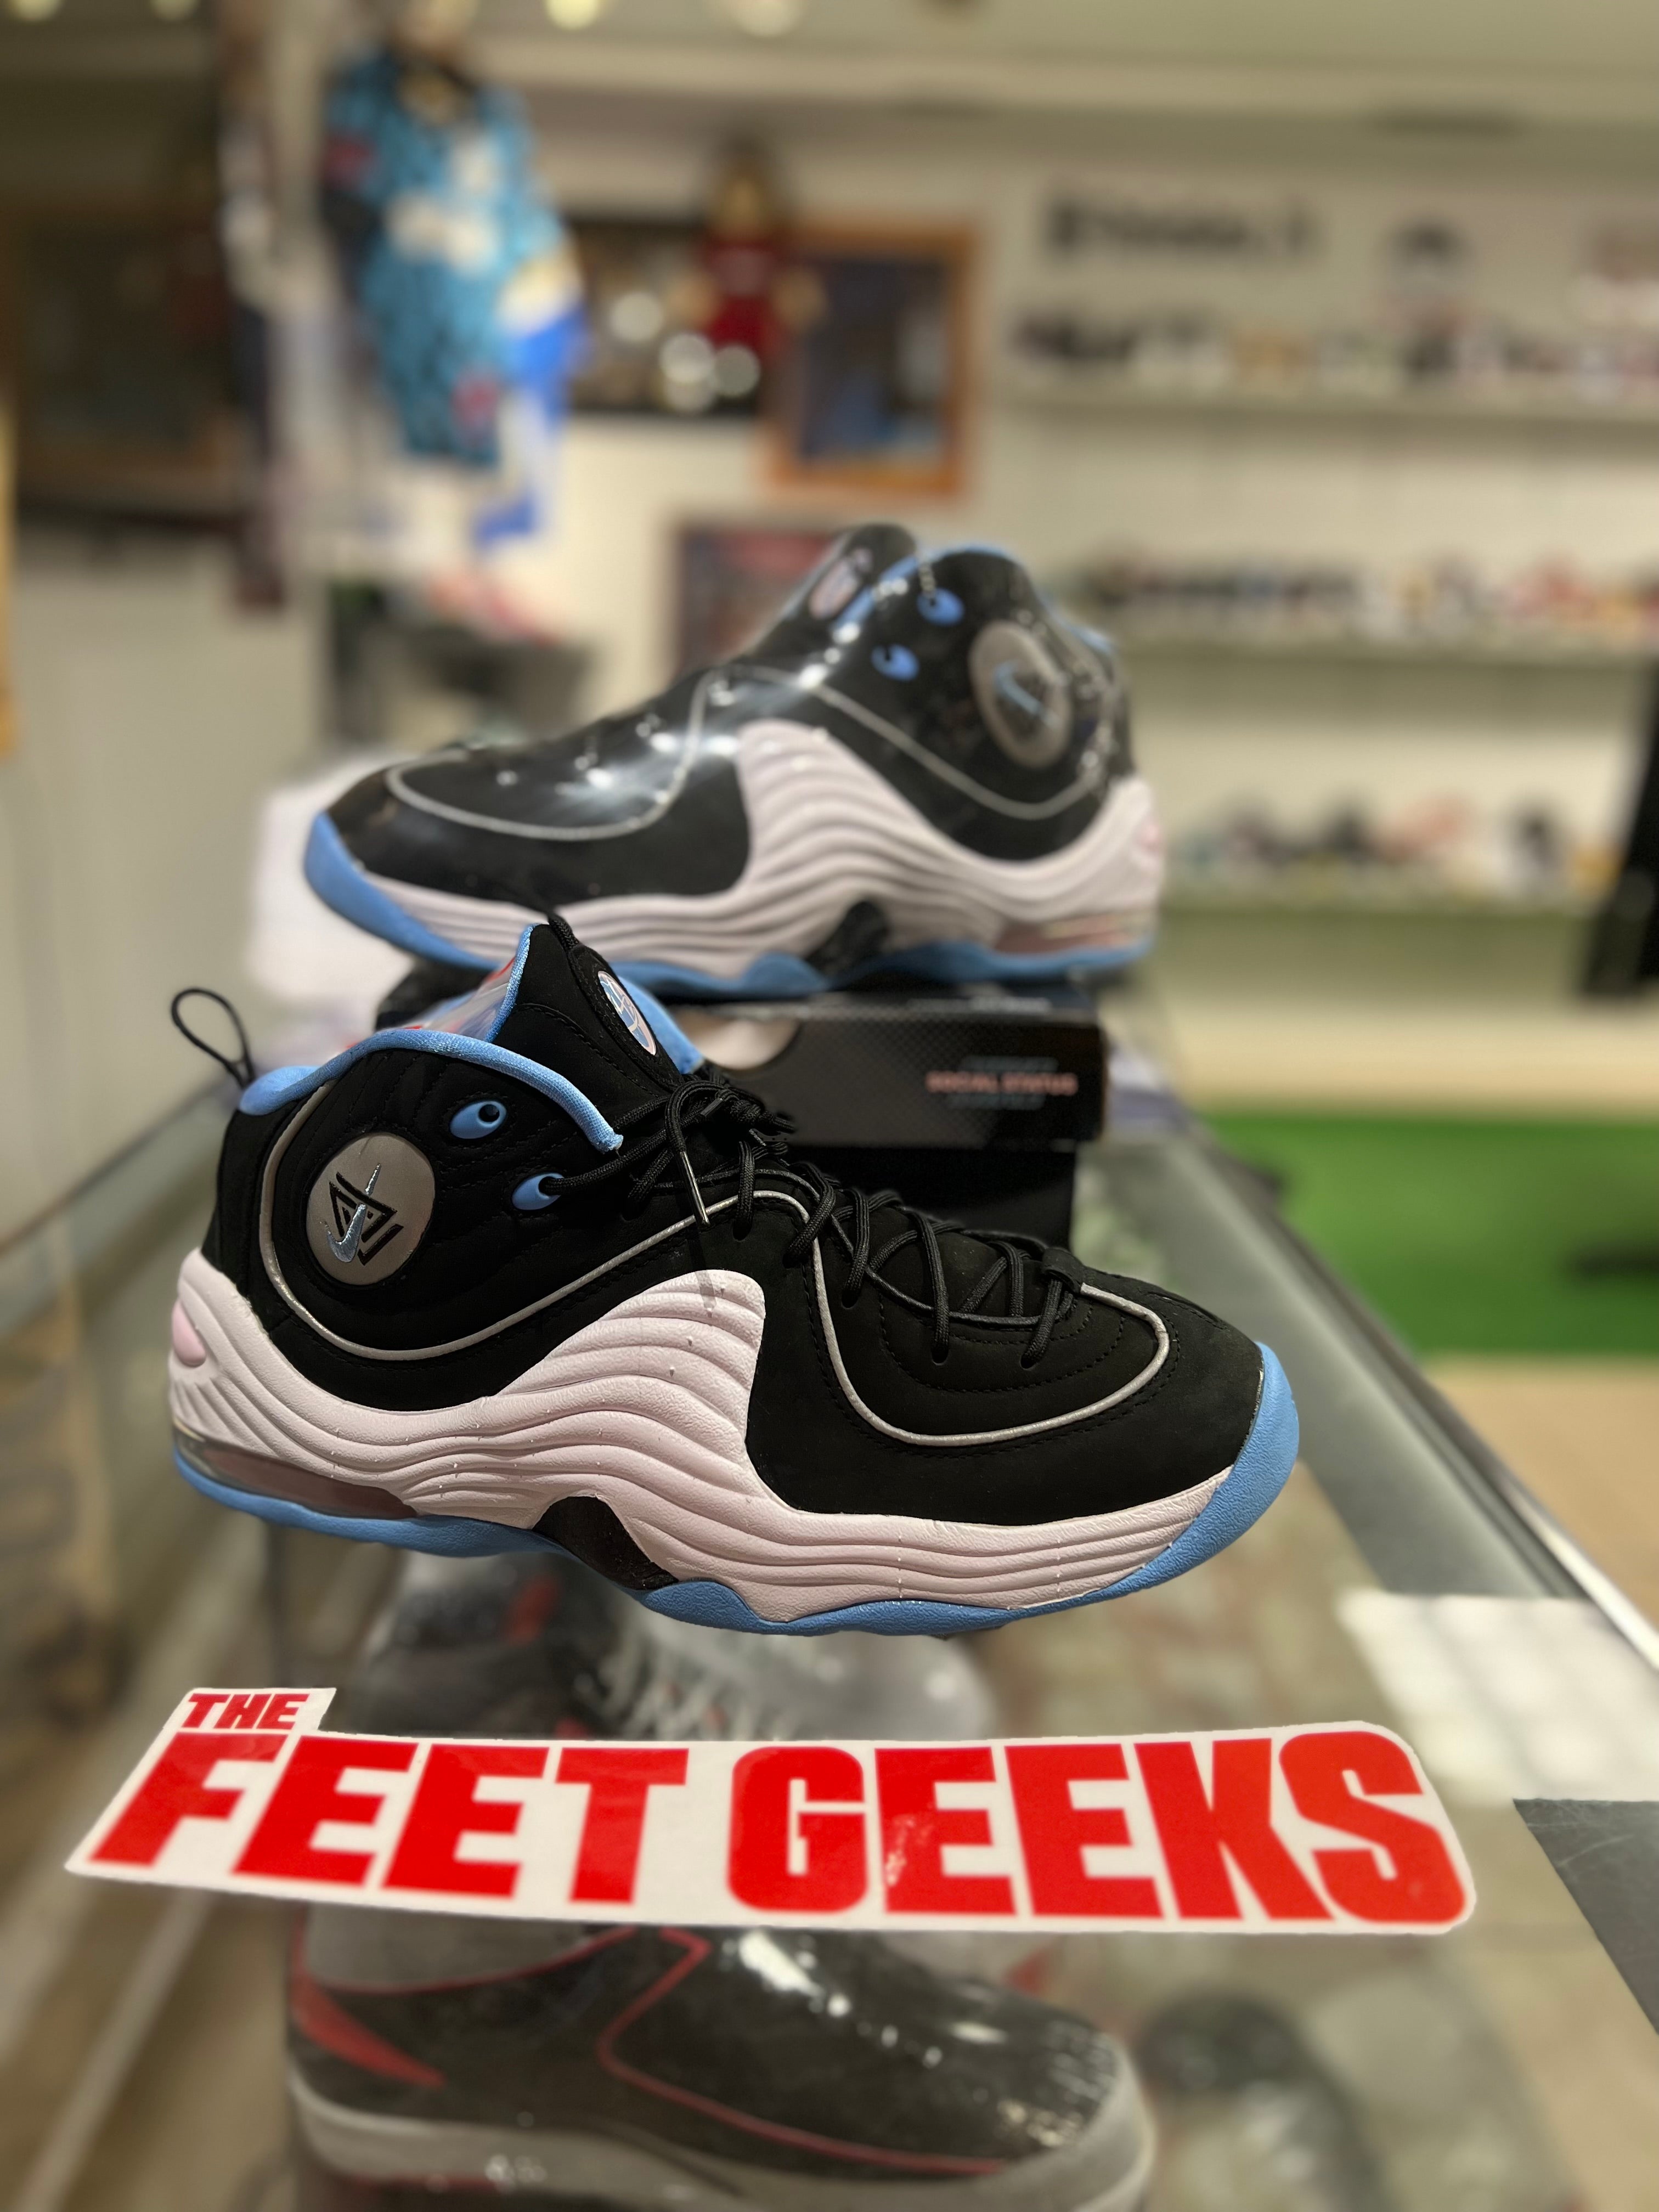 Nike air penny 2 social status black men’s shoe new